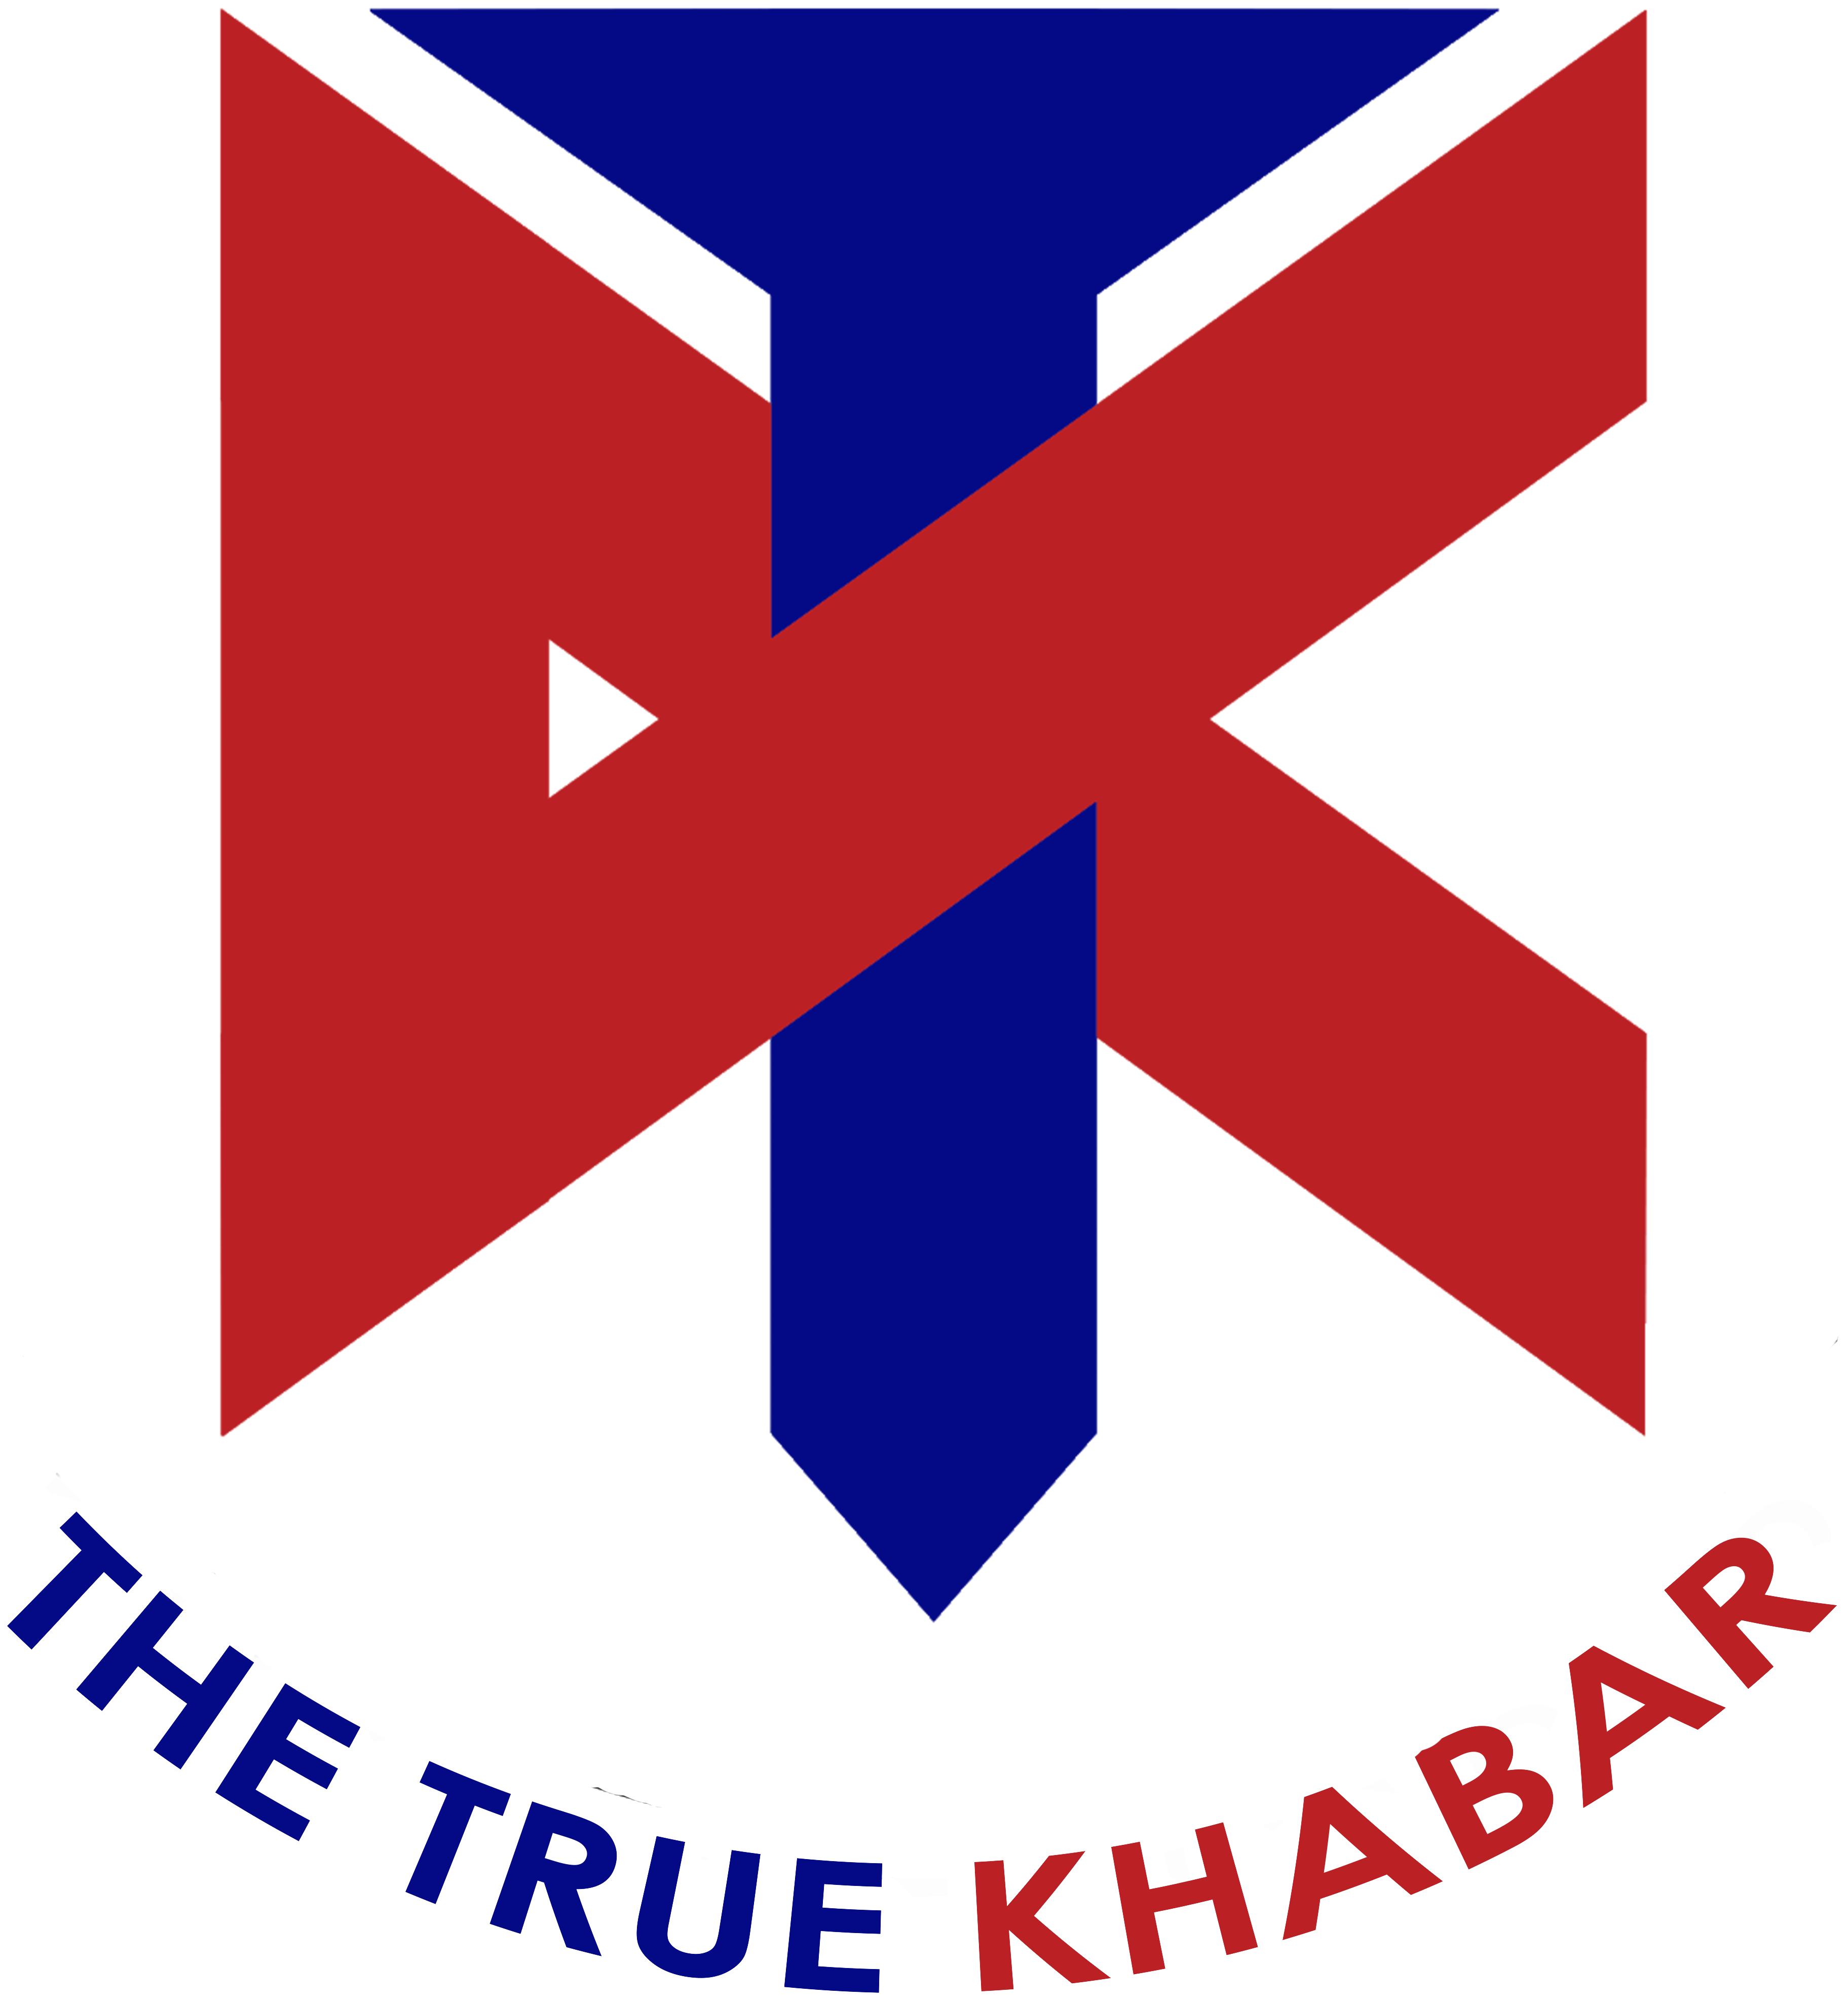 The True Khabar